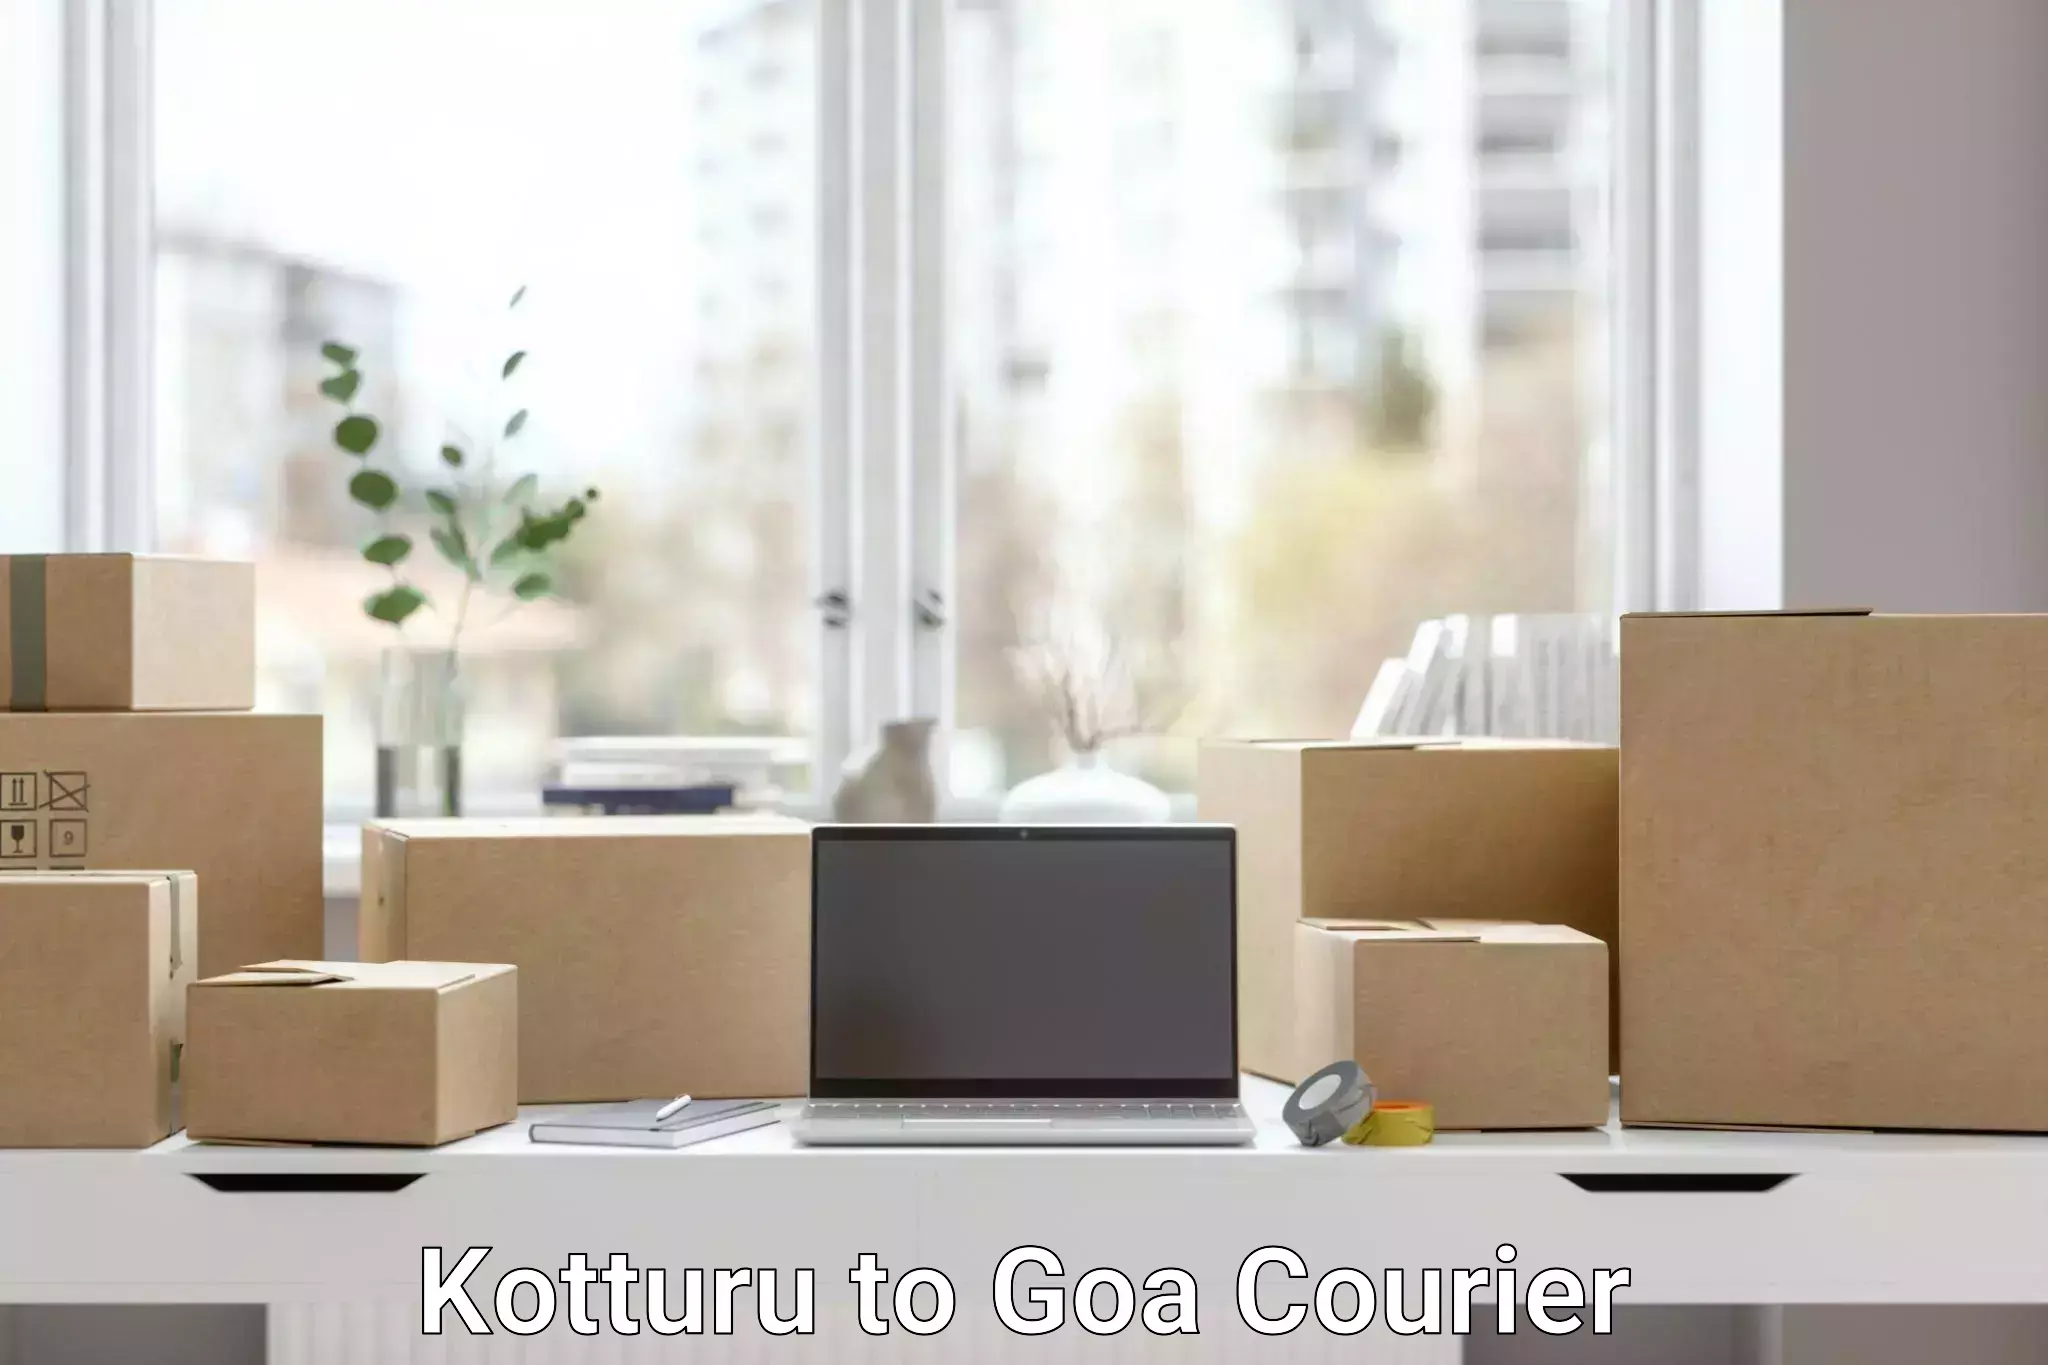 Cost-effective freight solutions Kotturu to Goa